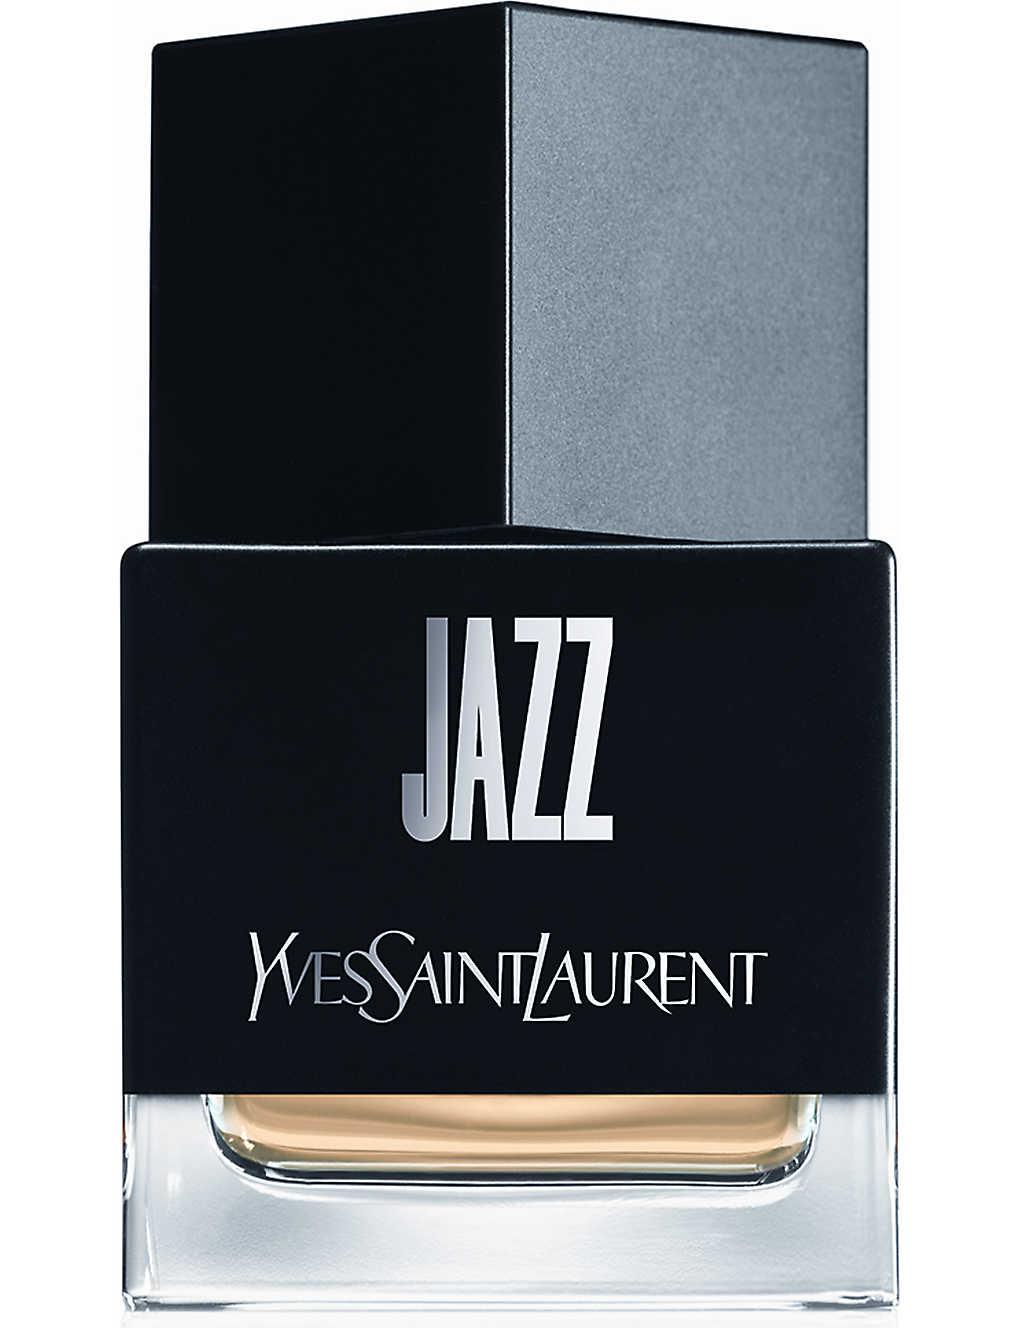 Yves Saint Laurent Jazz Eau De Toilette 80ml